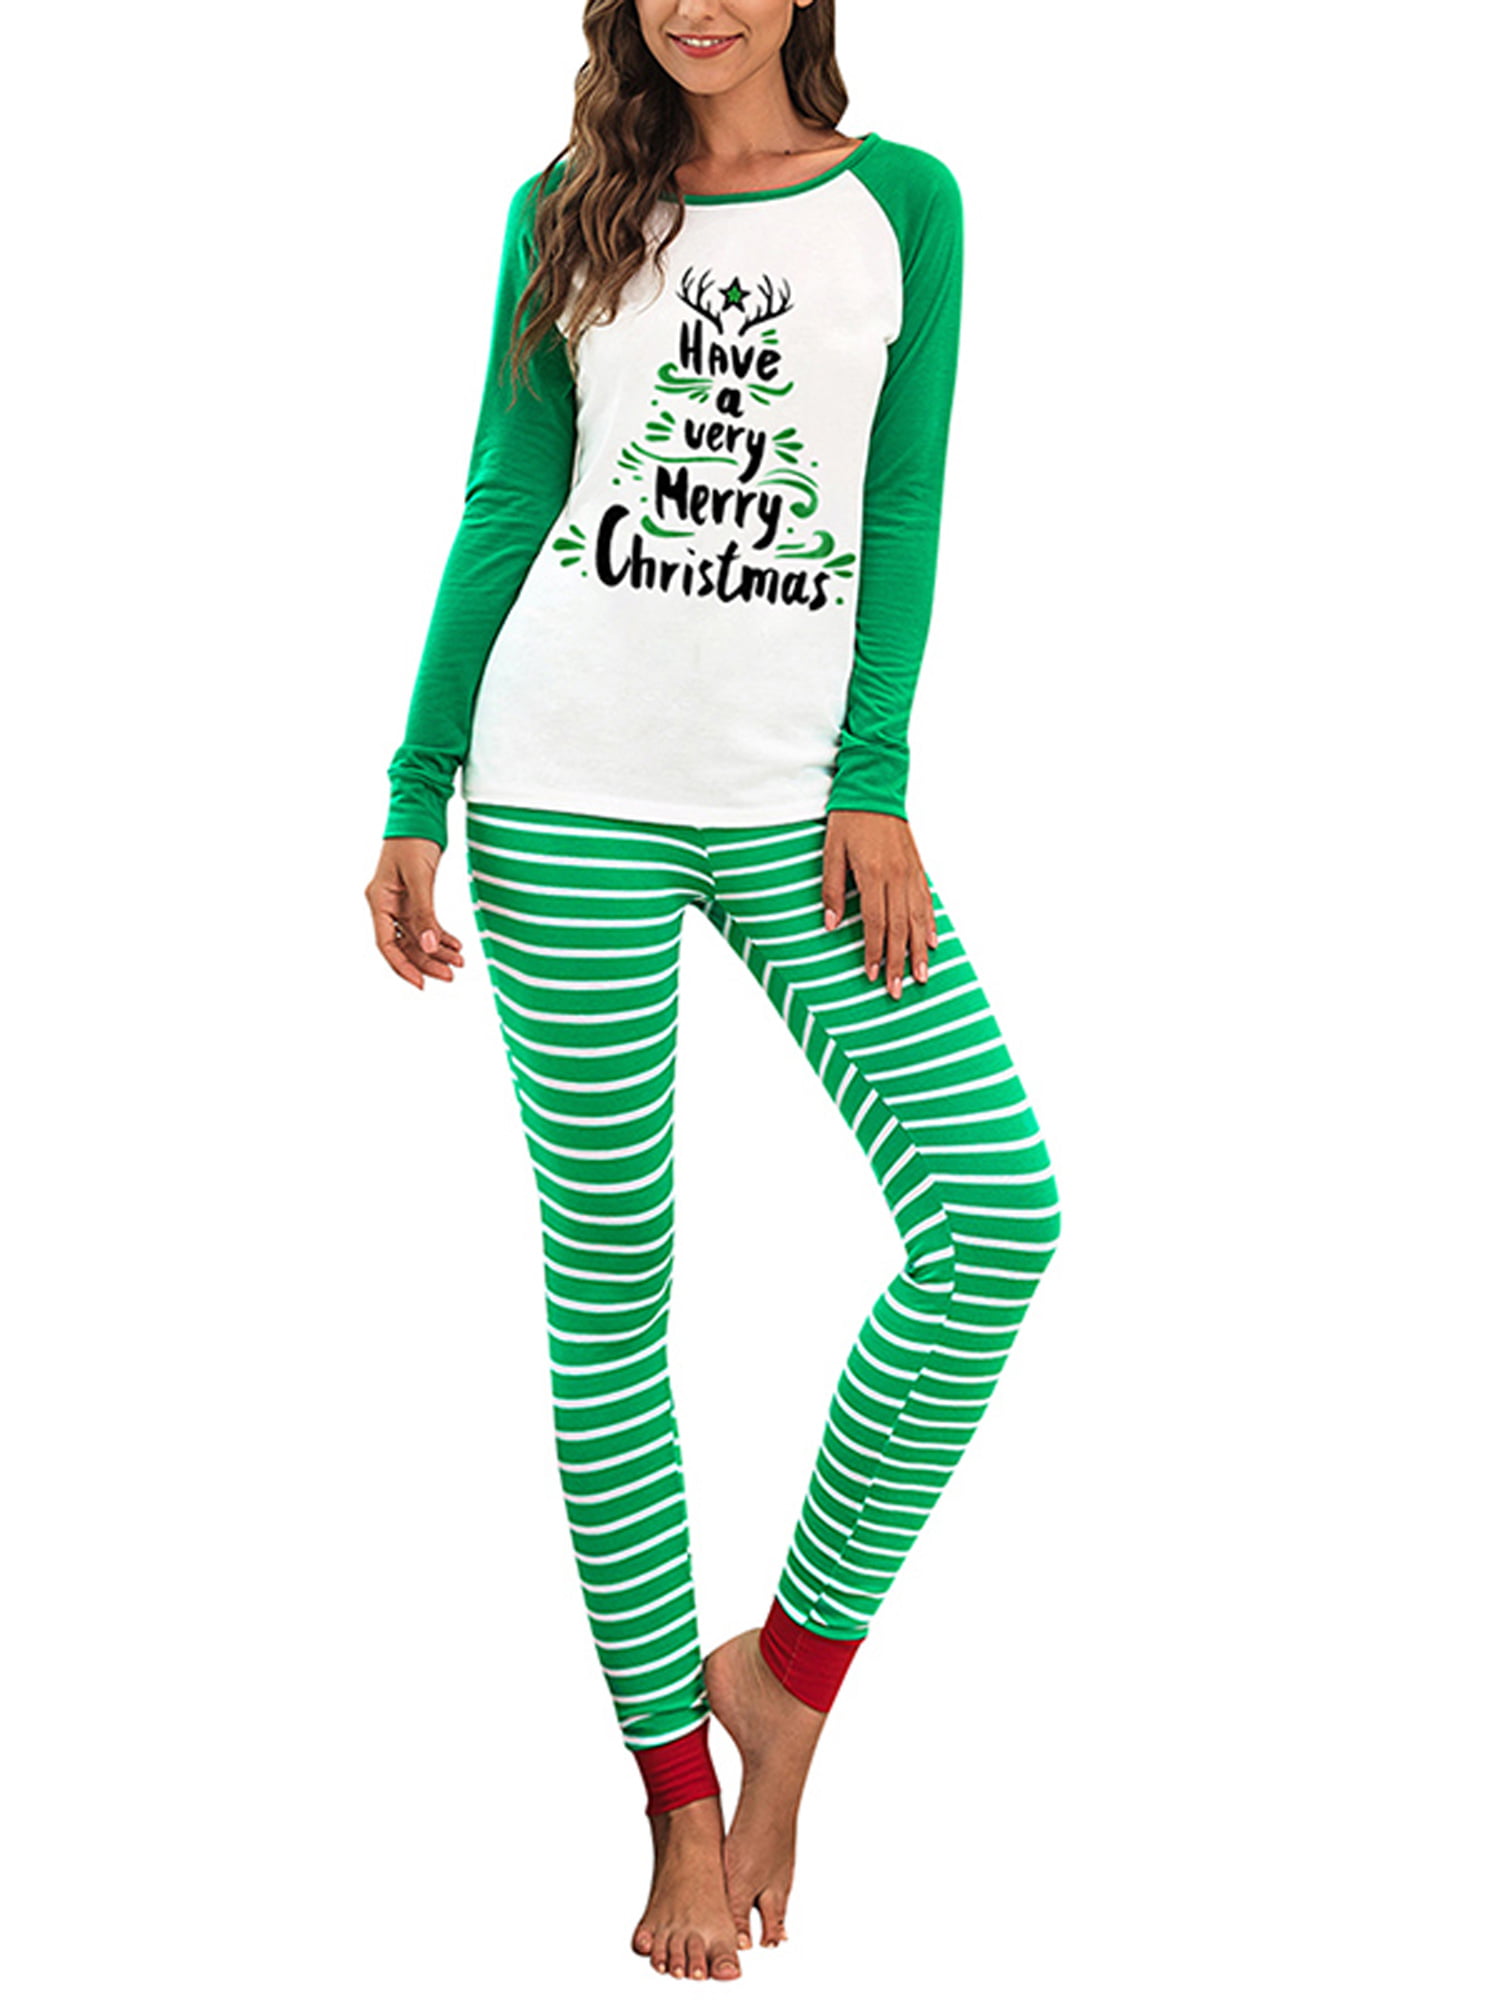 Wodstyle - Womens Christmas Pajamas Set Xmas Long Sleeve Top + Striped ...